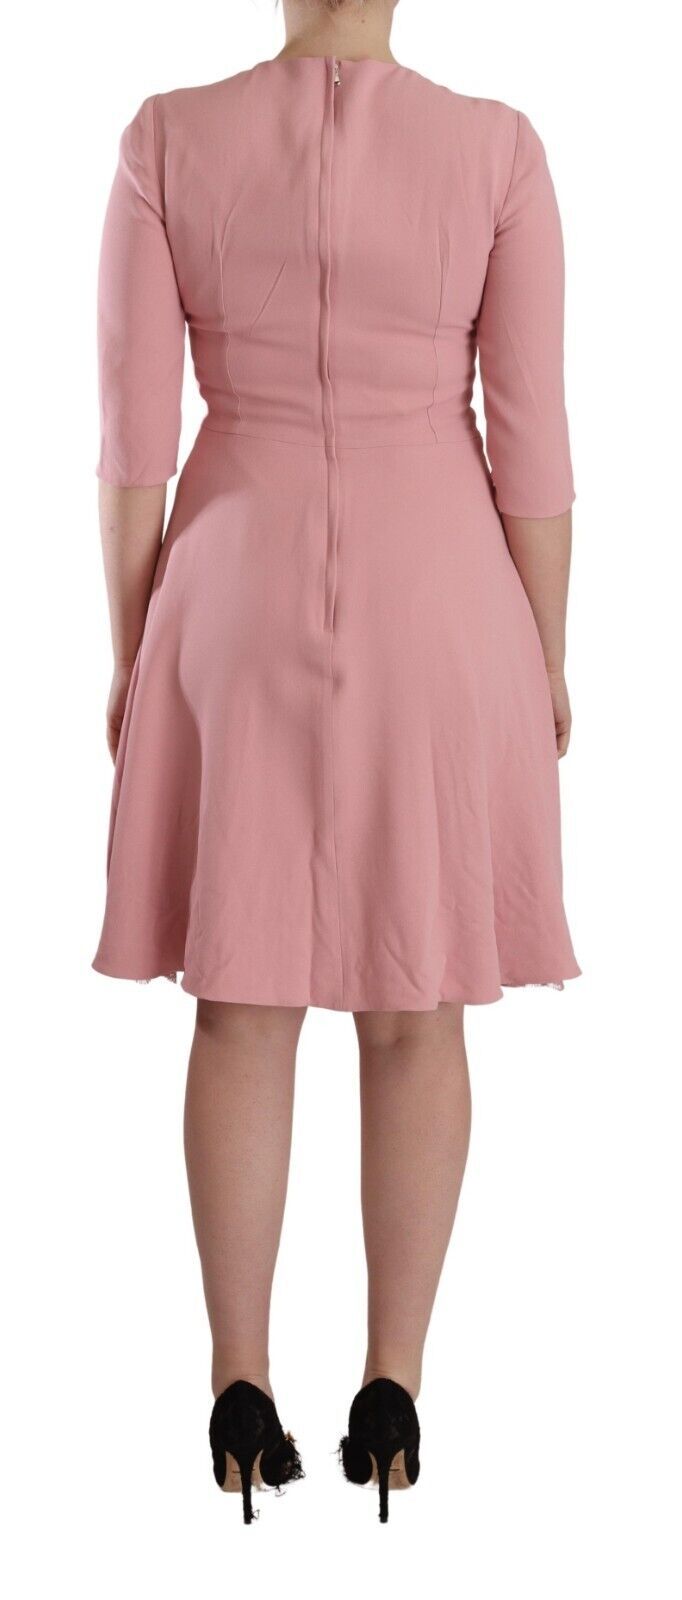 Elegant Pink A-Line Knee Length Dress